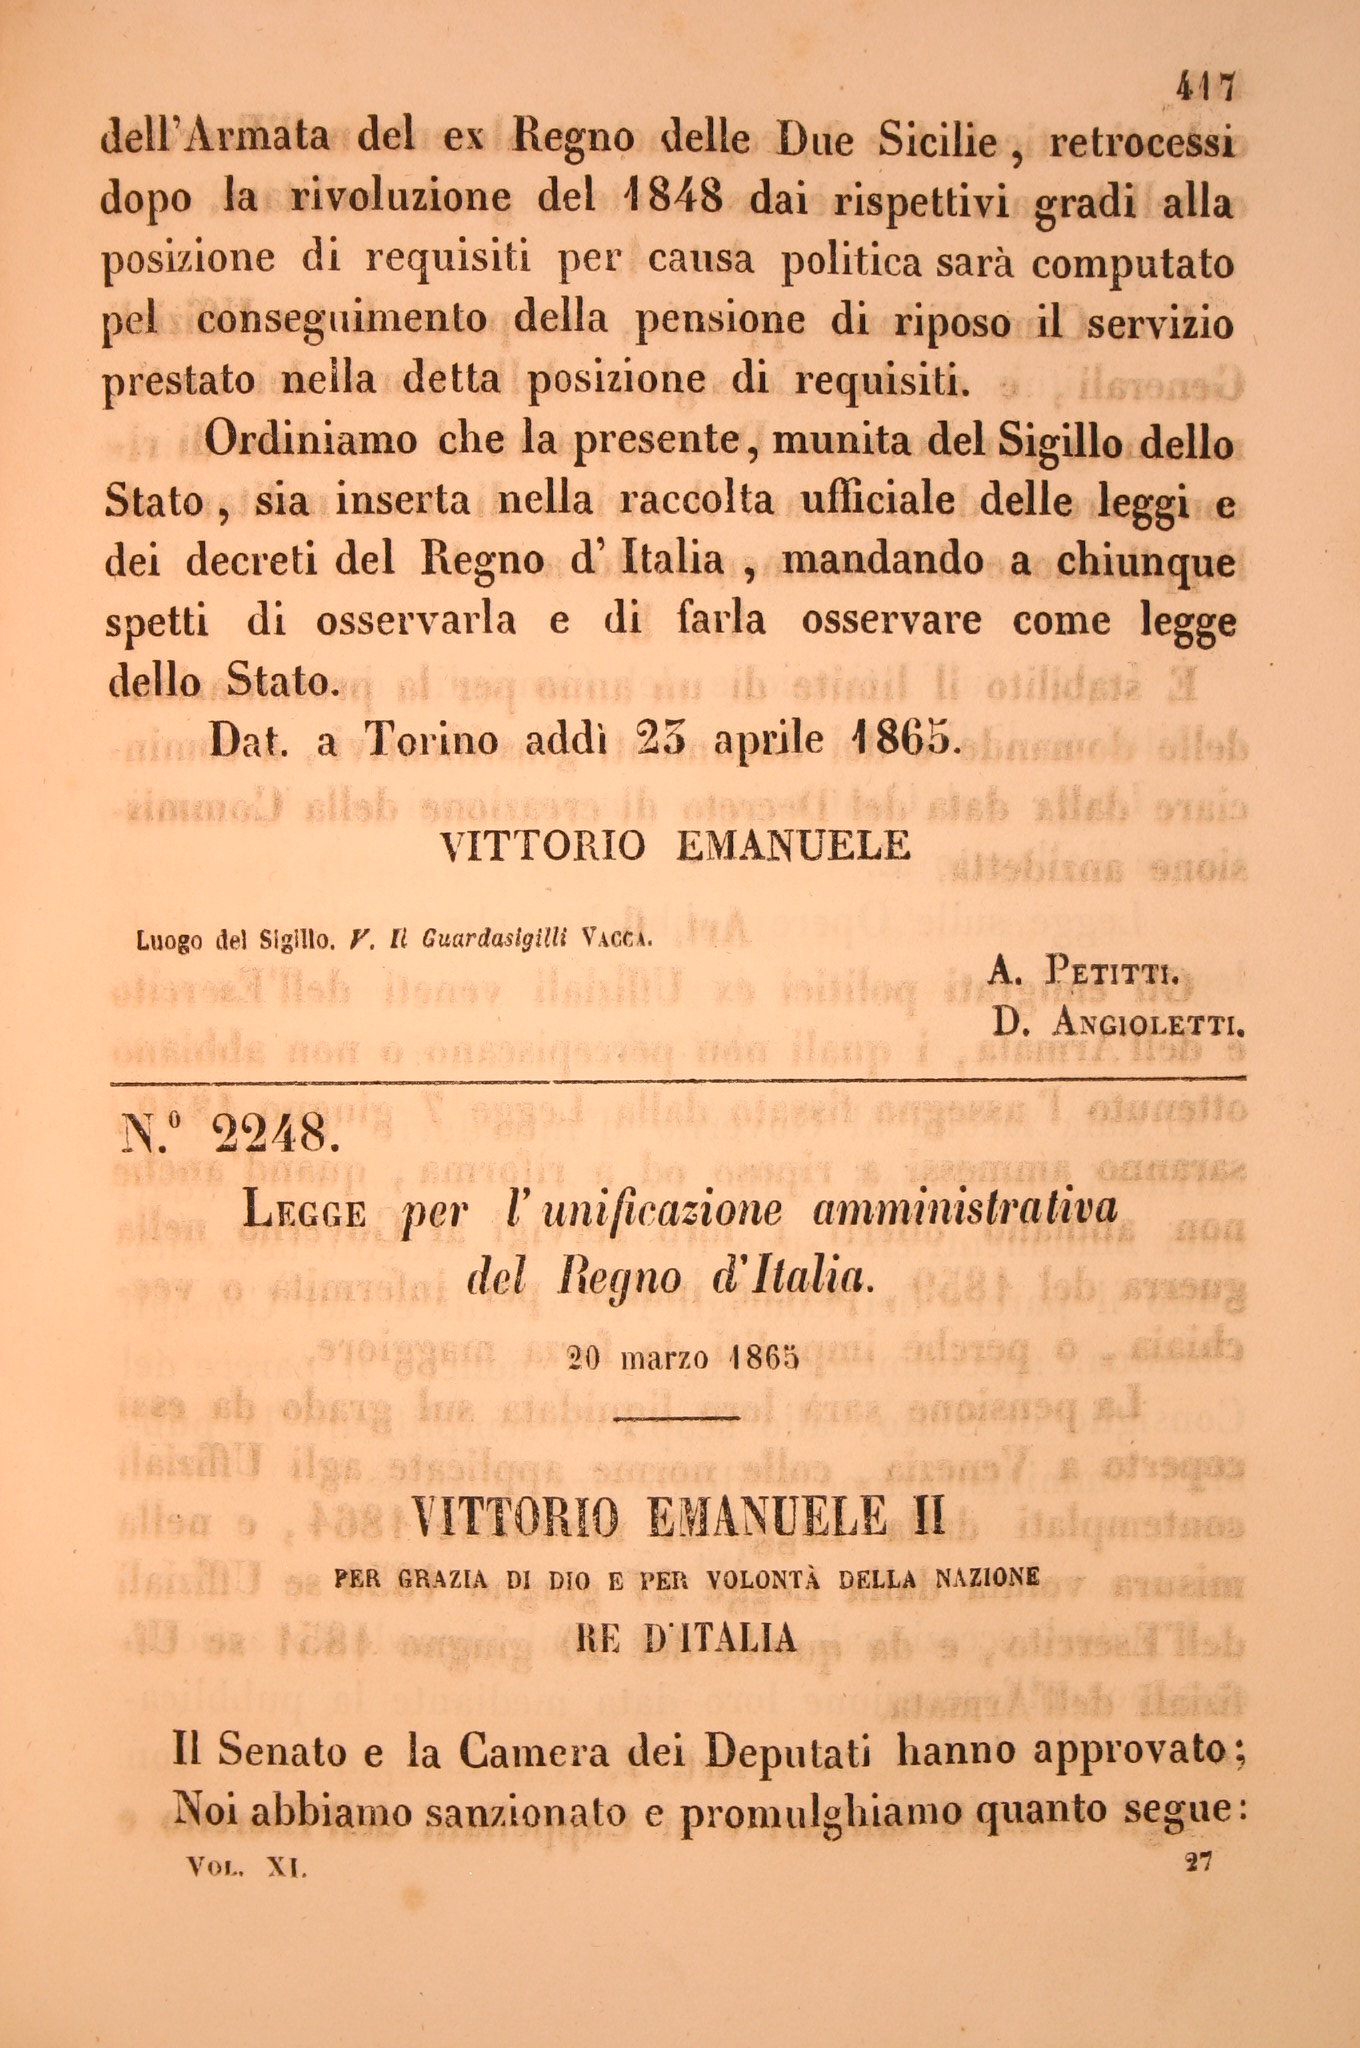 Legge per l'unificazione amministrativa del Regno d'Italia